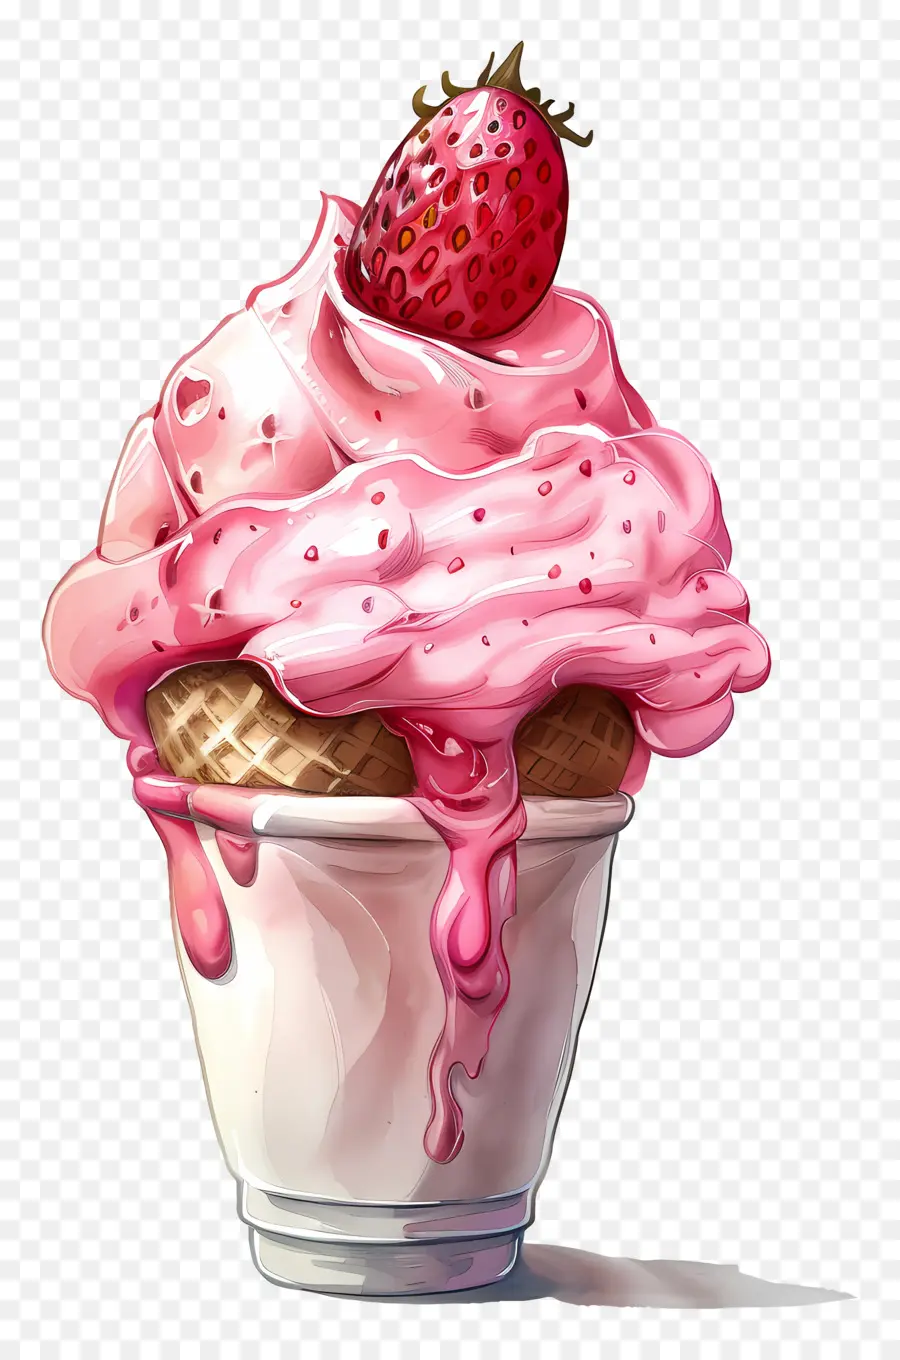 ice cream strawberry strawberry ice cream sundae cherry dessert